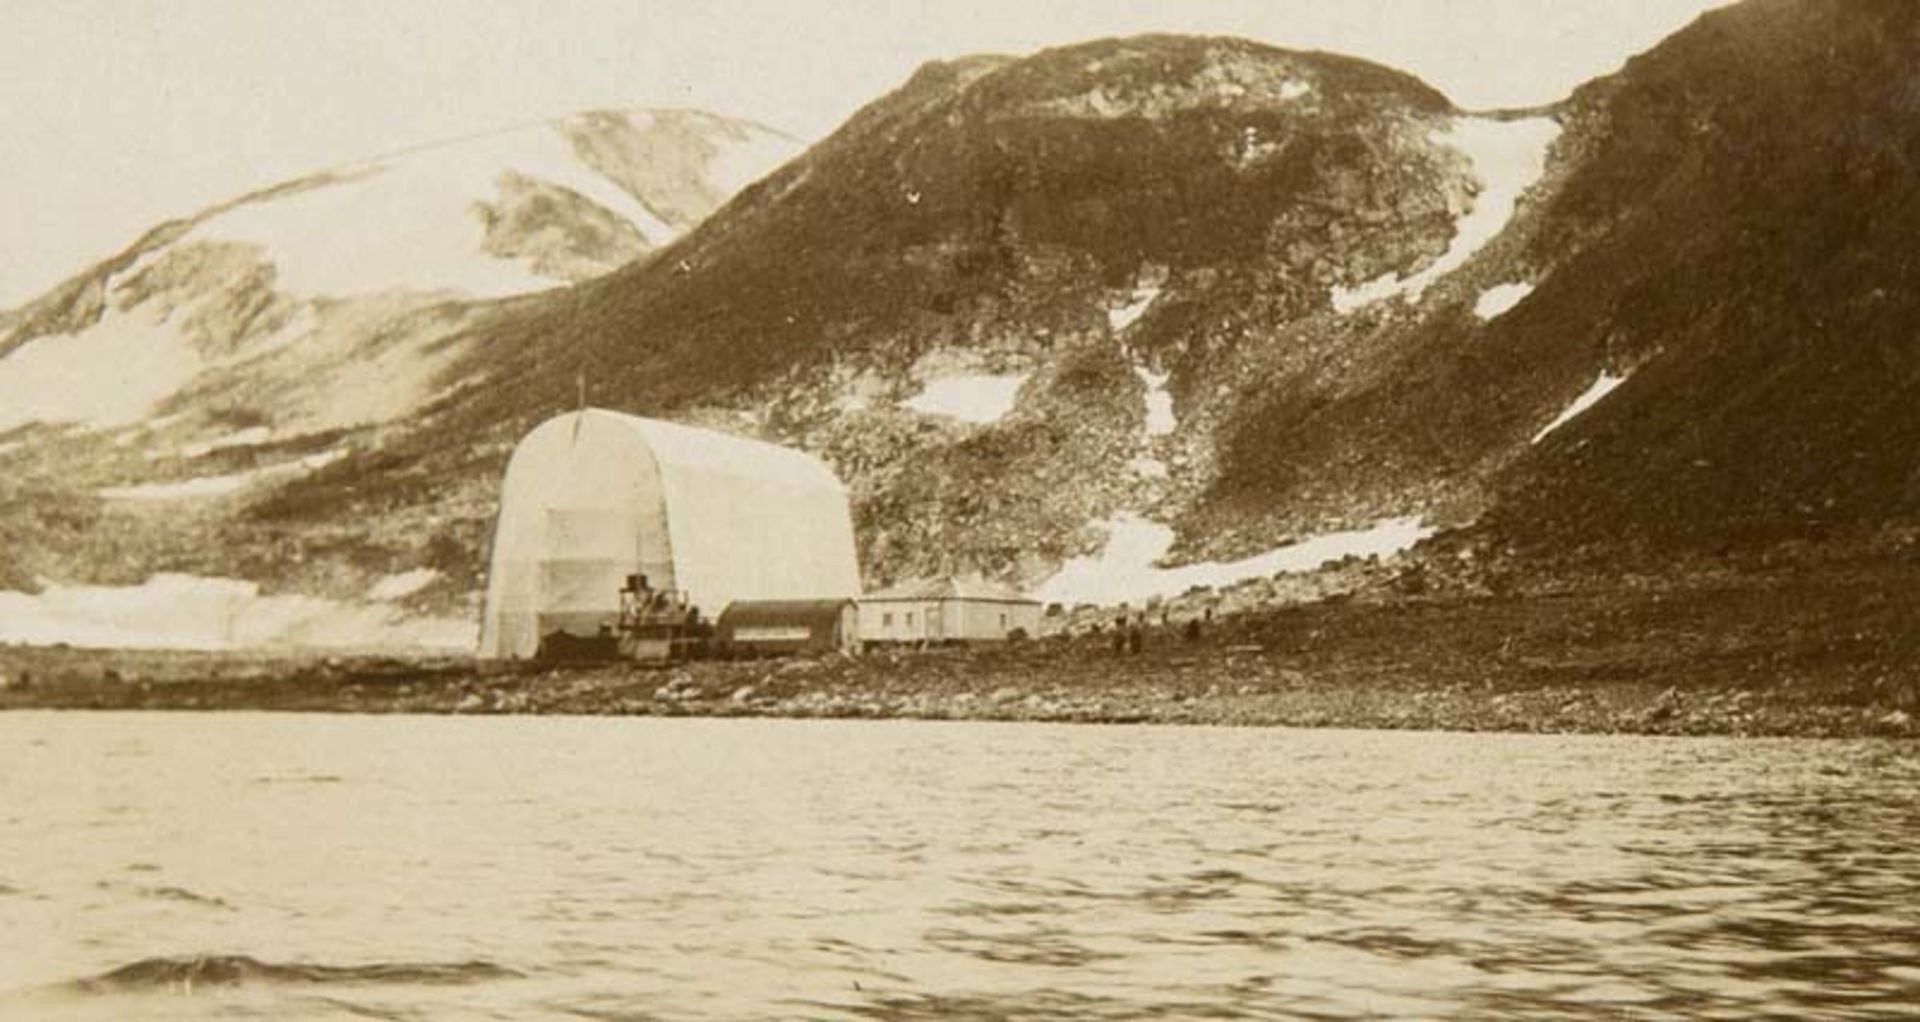 Arktis - Norwegen - Spitzbergen - - Album einer Reise nach Spitzbergen 1907 Photoalbum mit ca. 140